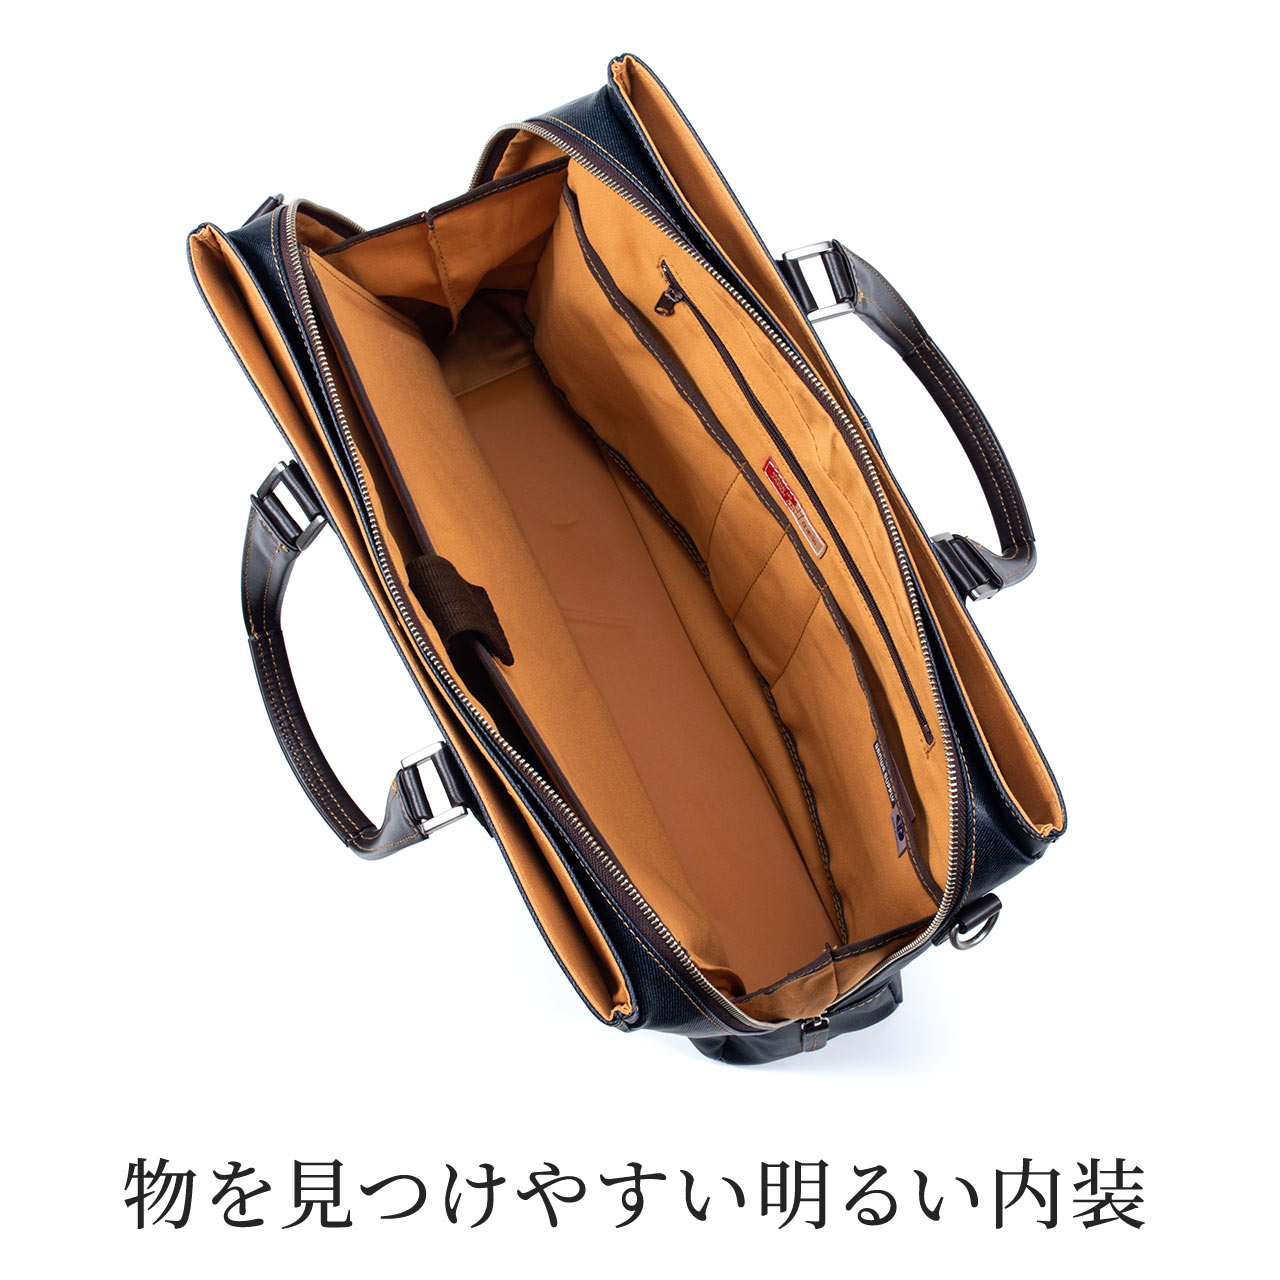 日本製ビジネスバッグ（豊岡縫製・国産素材岡山デニム使用・2WAY